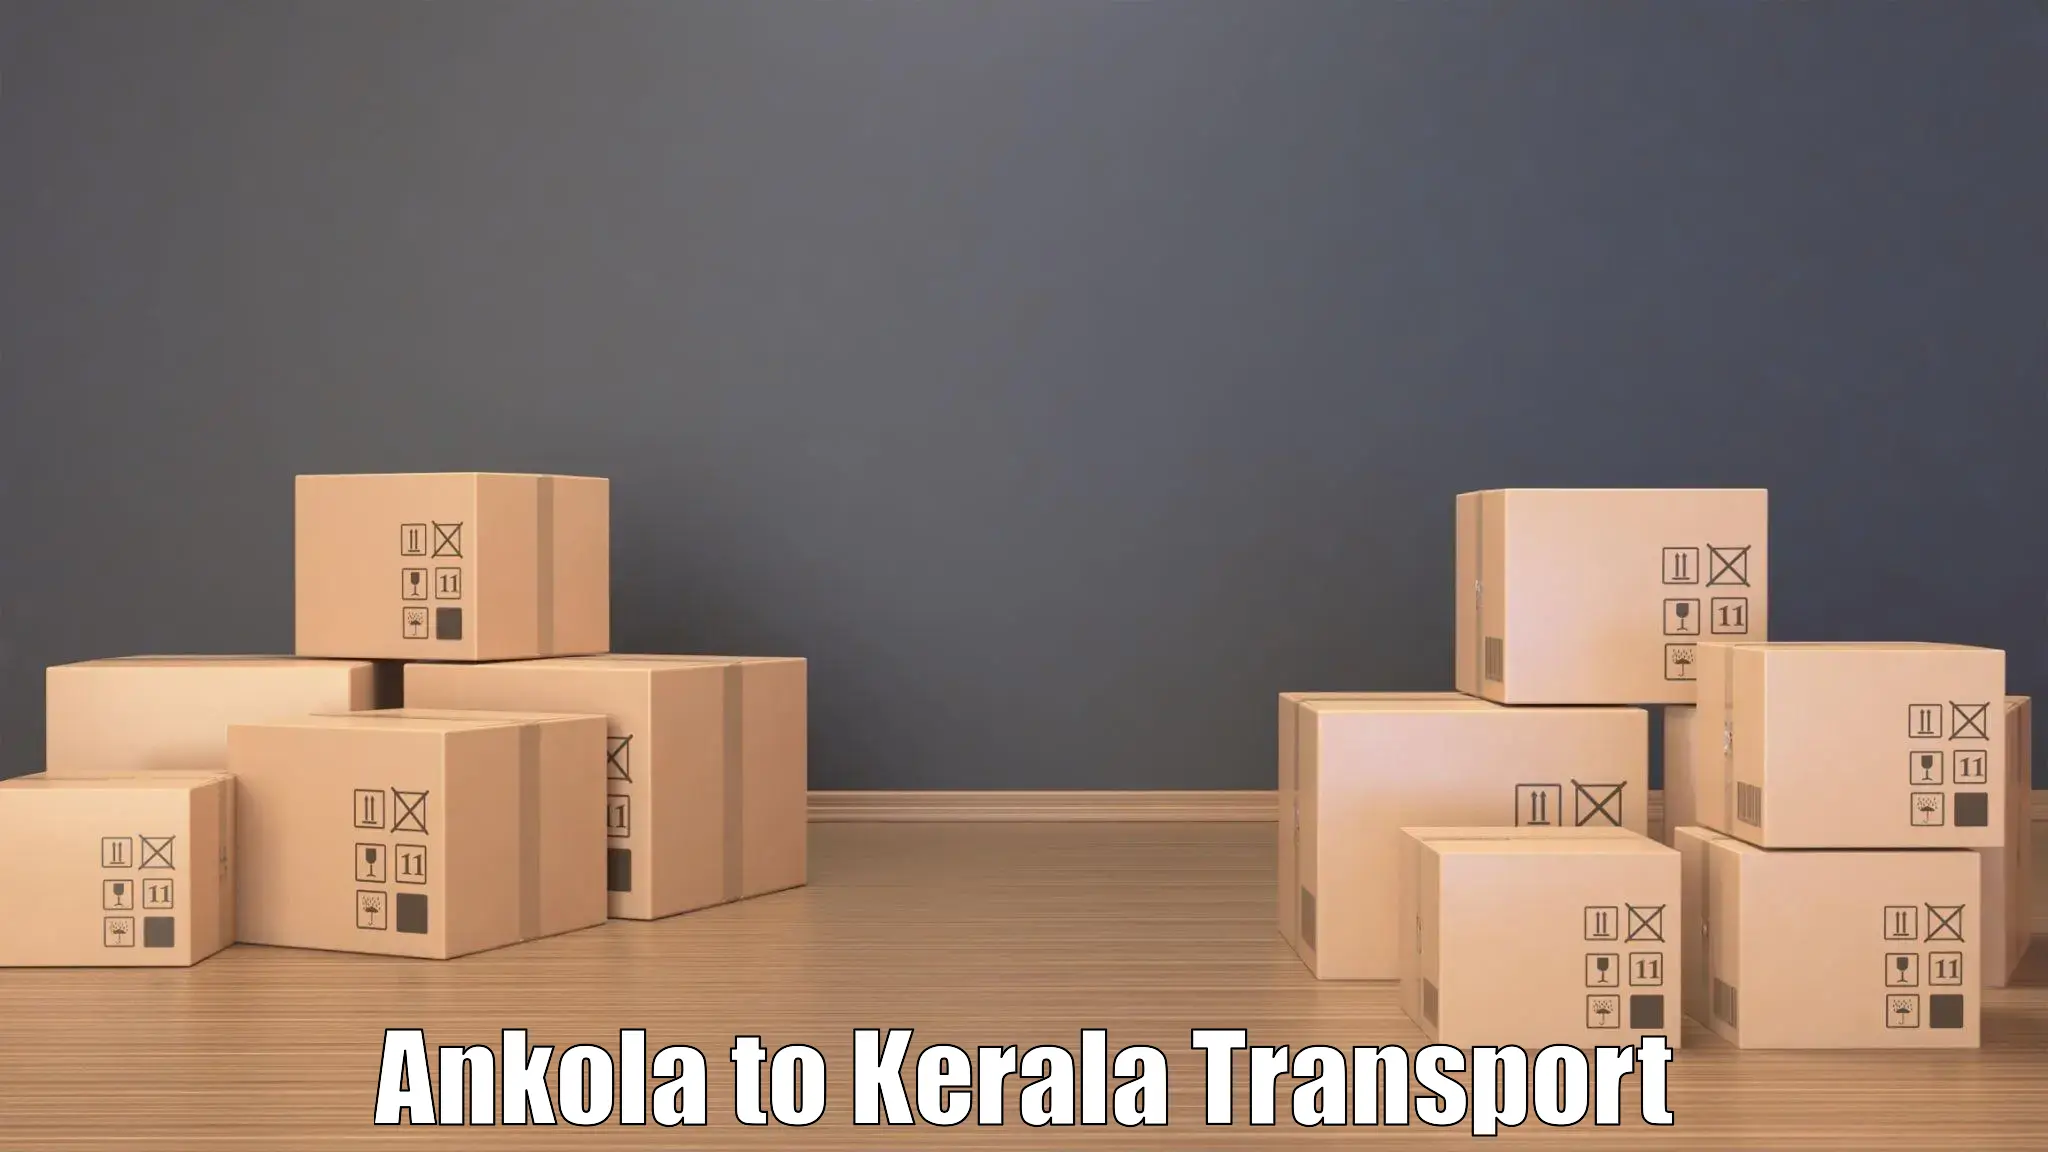 Intercity transport in Ankola to Cherthala